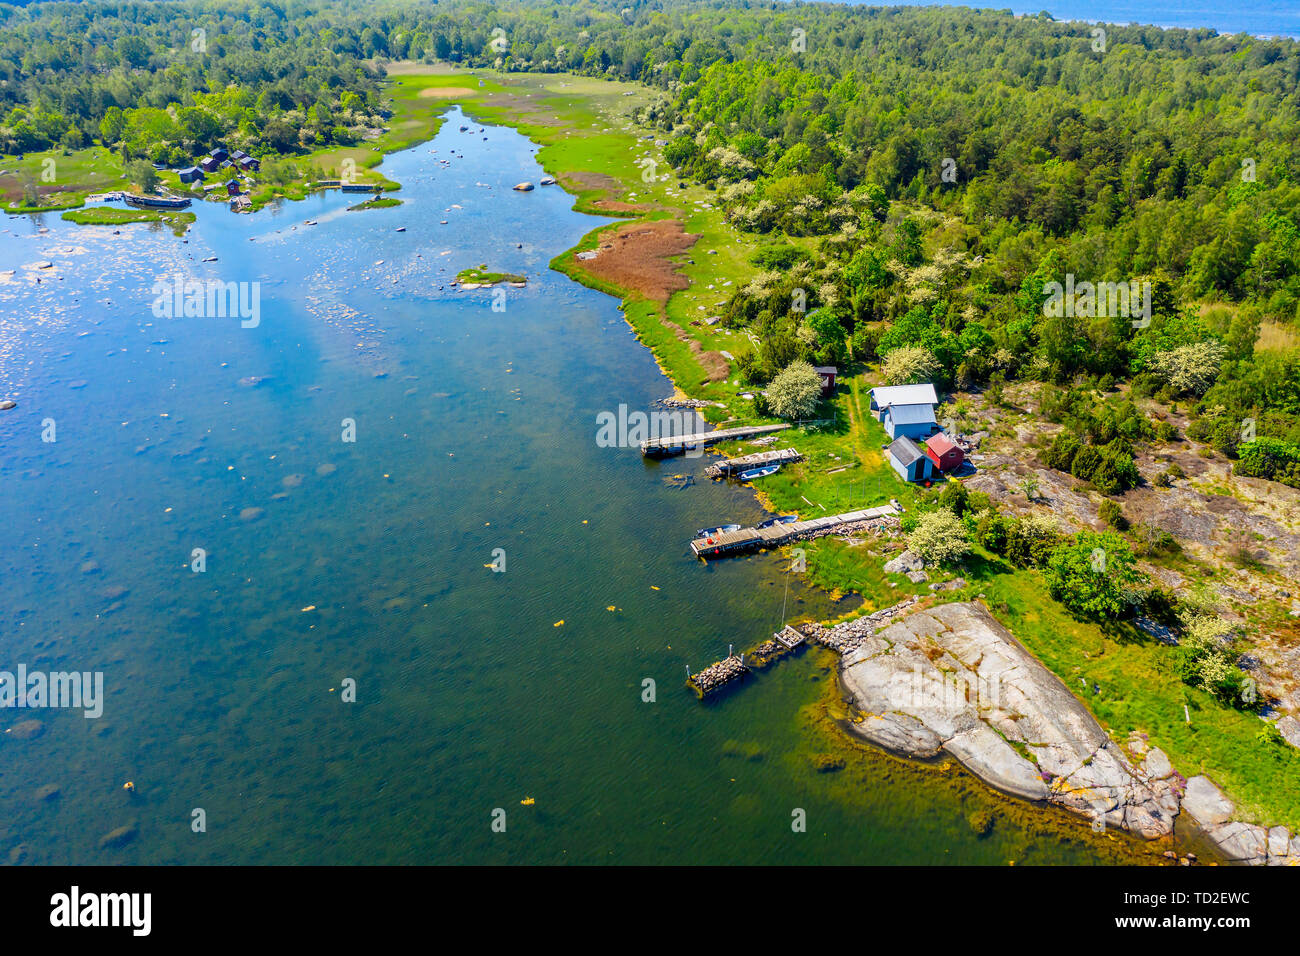 De l'antenne Paysage côtier avec un petit camp de pêche sur la rive d'une baie. Lieu de l'île dans l'archipel Hasslo Blekinge, Suède. Banque D'Images